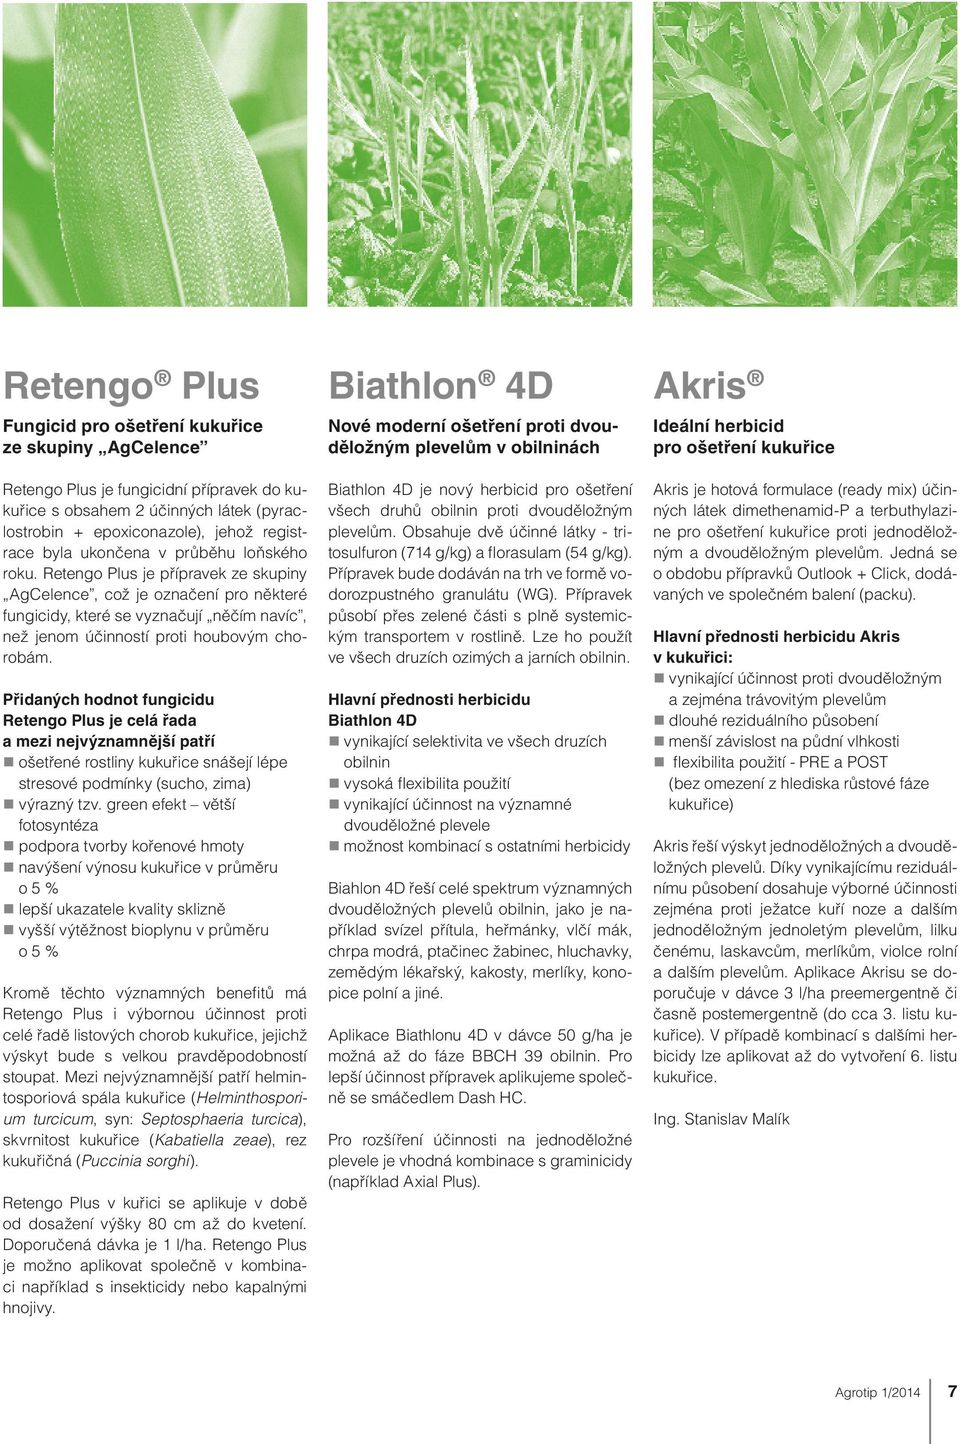 Přidaných hodnot fungicidu Retengo Plus je celá řada a mezi nejvýznamnější patří ošetřené rostliny kukuřice snášejí lépe stresové podmínky (sucho, zima) výrazný tzv.